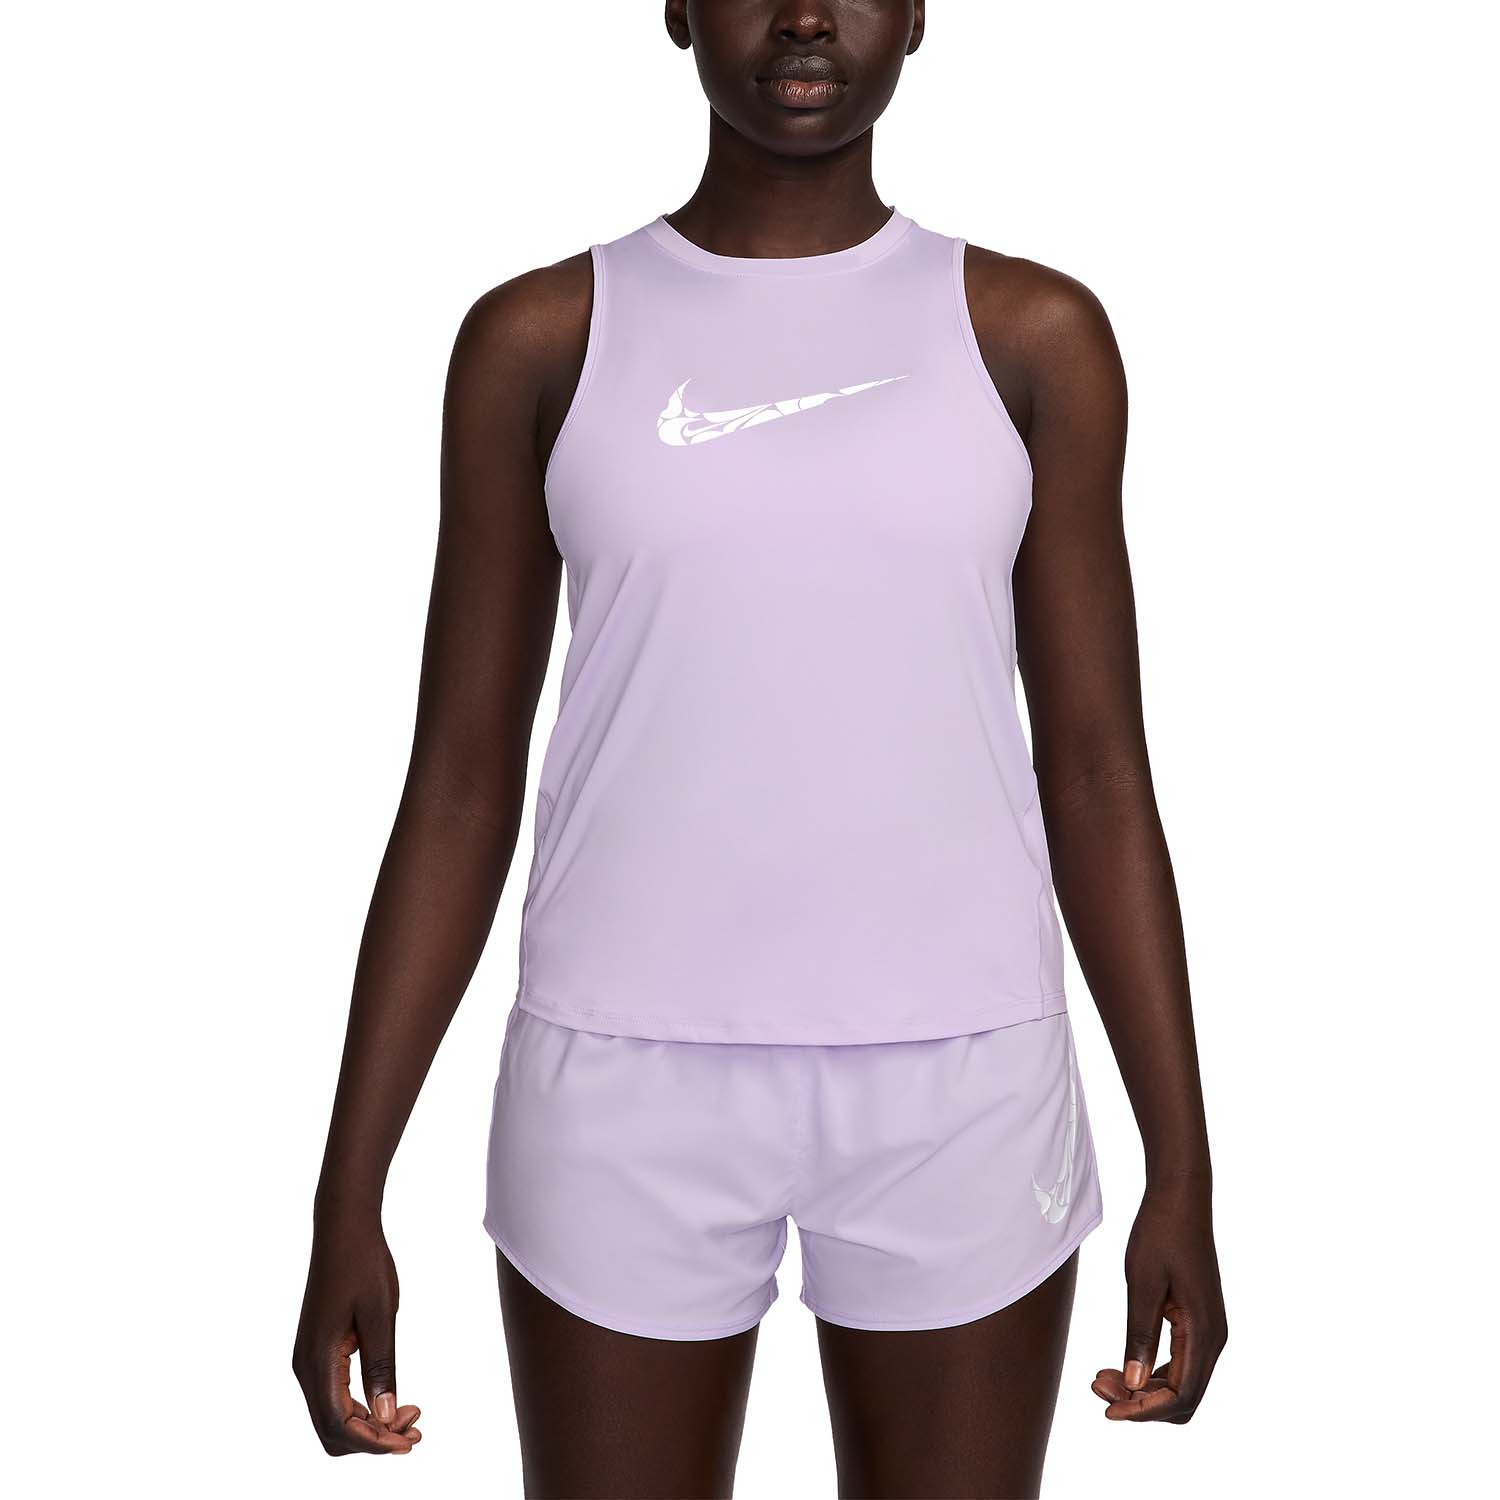 Nike One Swoosh Canotta - Lilac Bloom/White